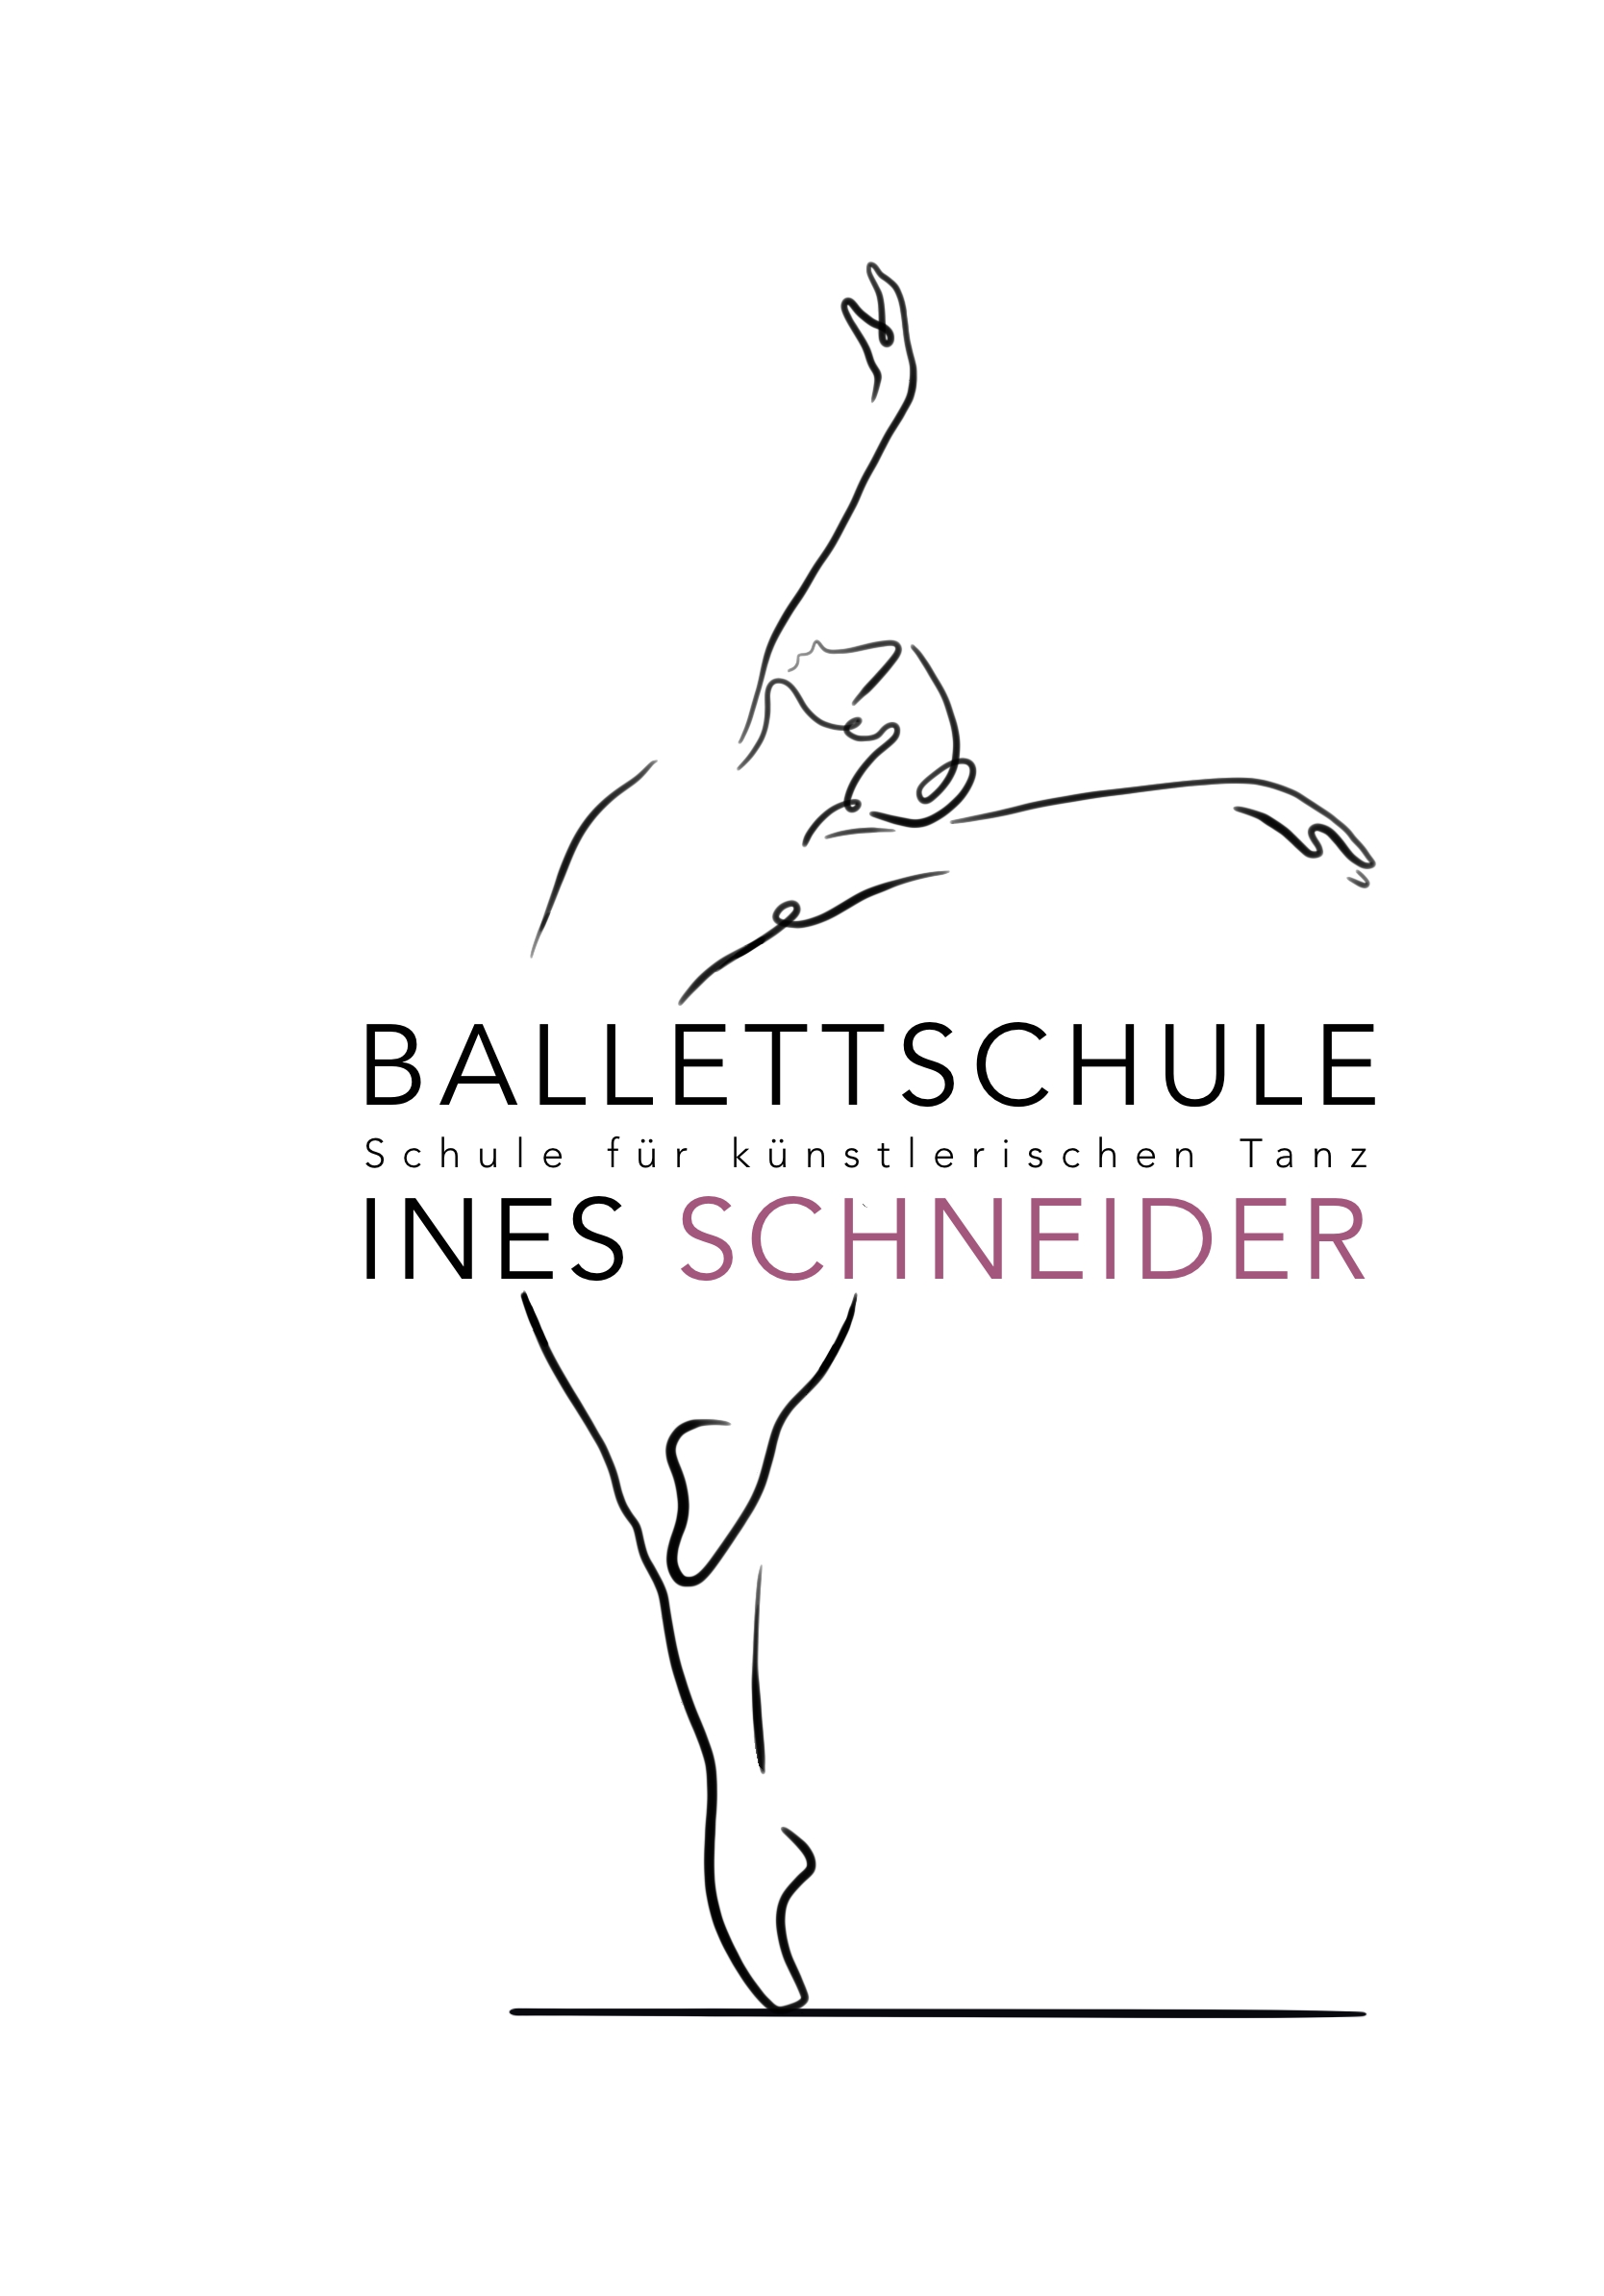 Ballettschule Ines Schneider, VS-Villingen